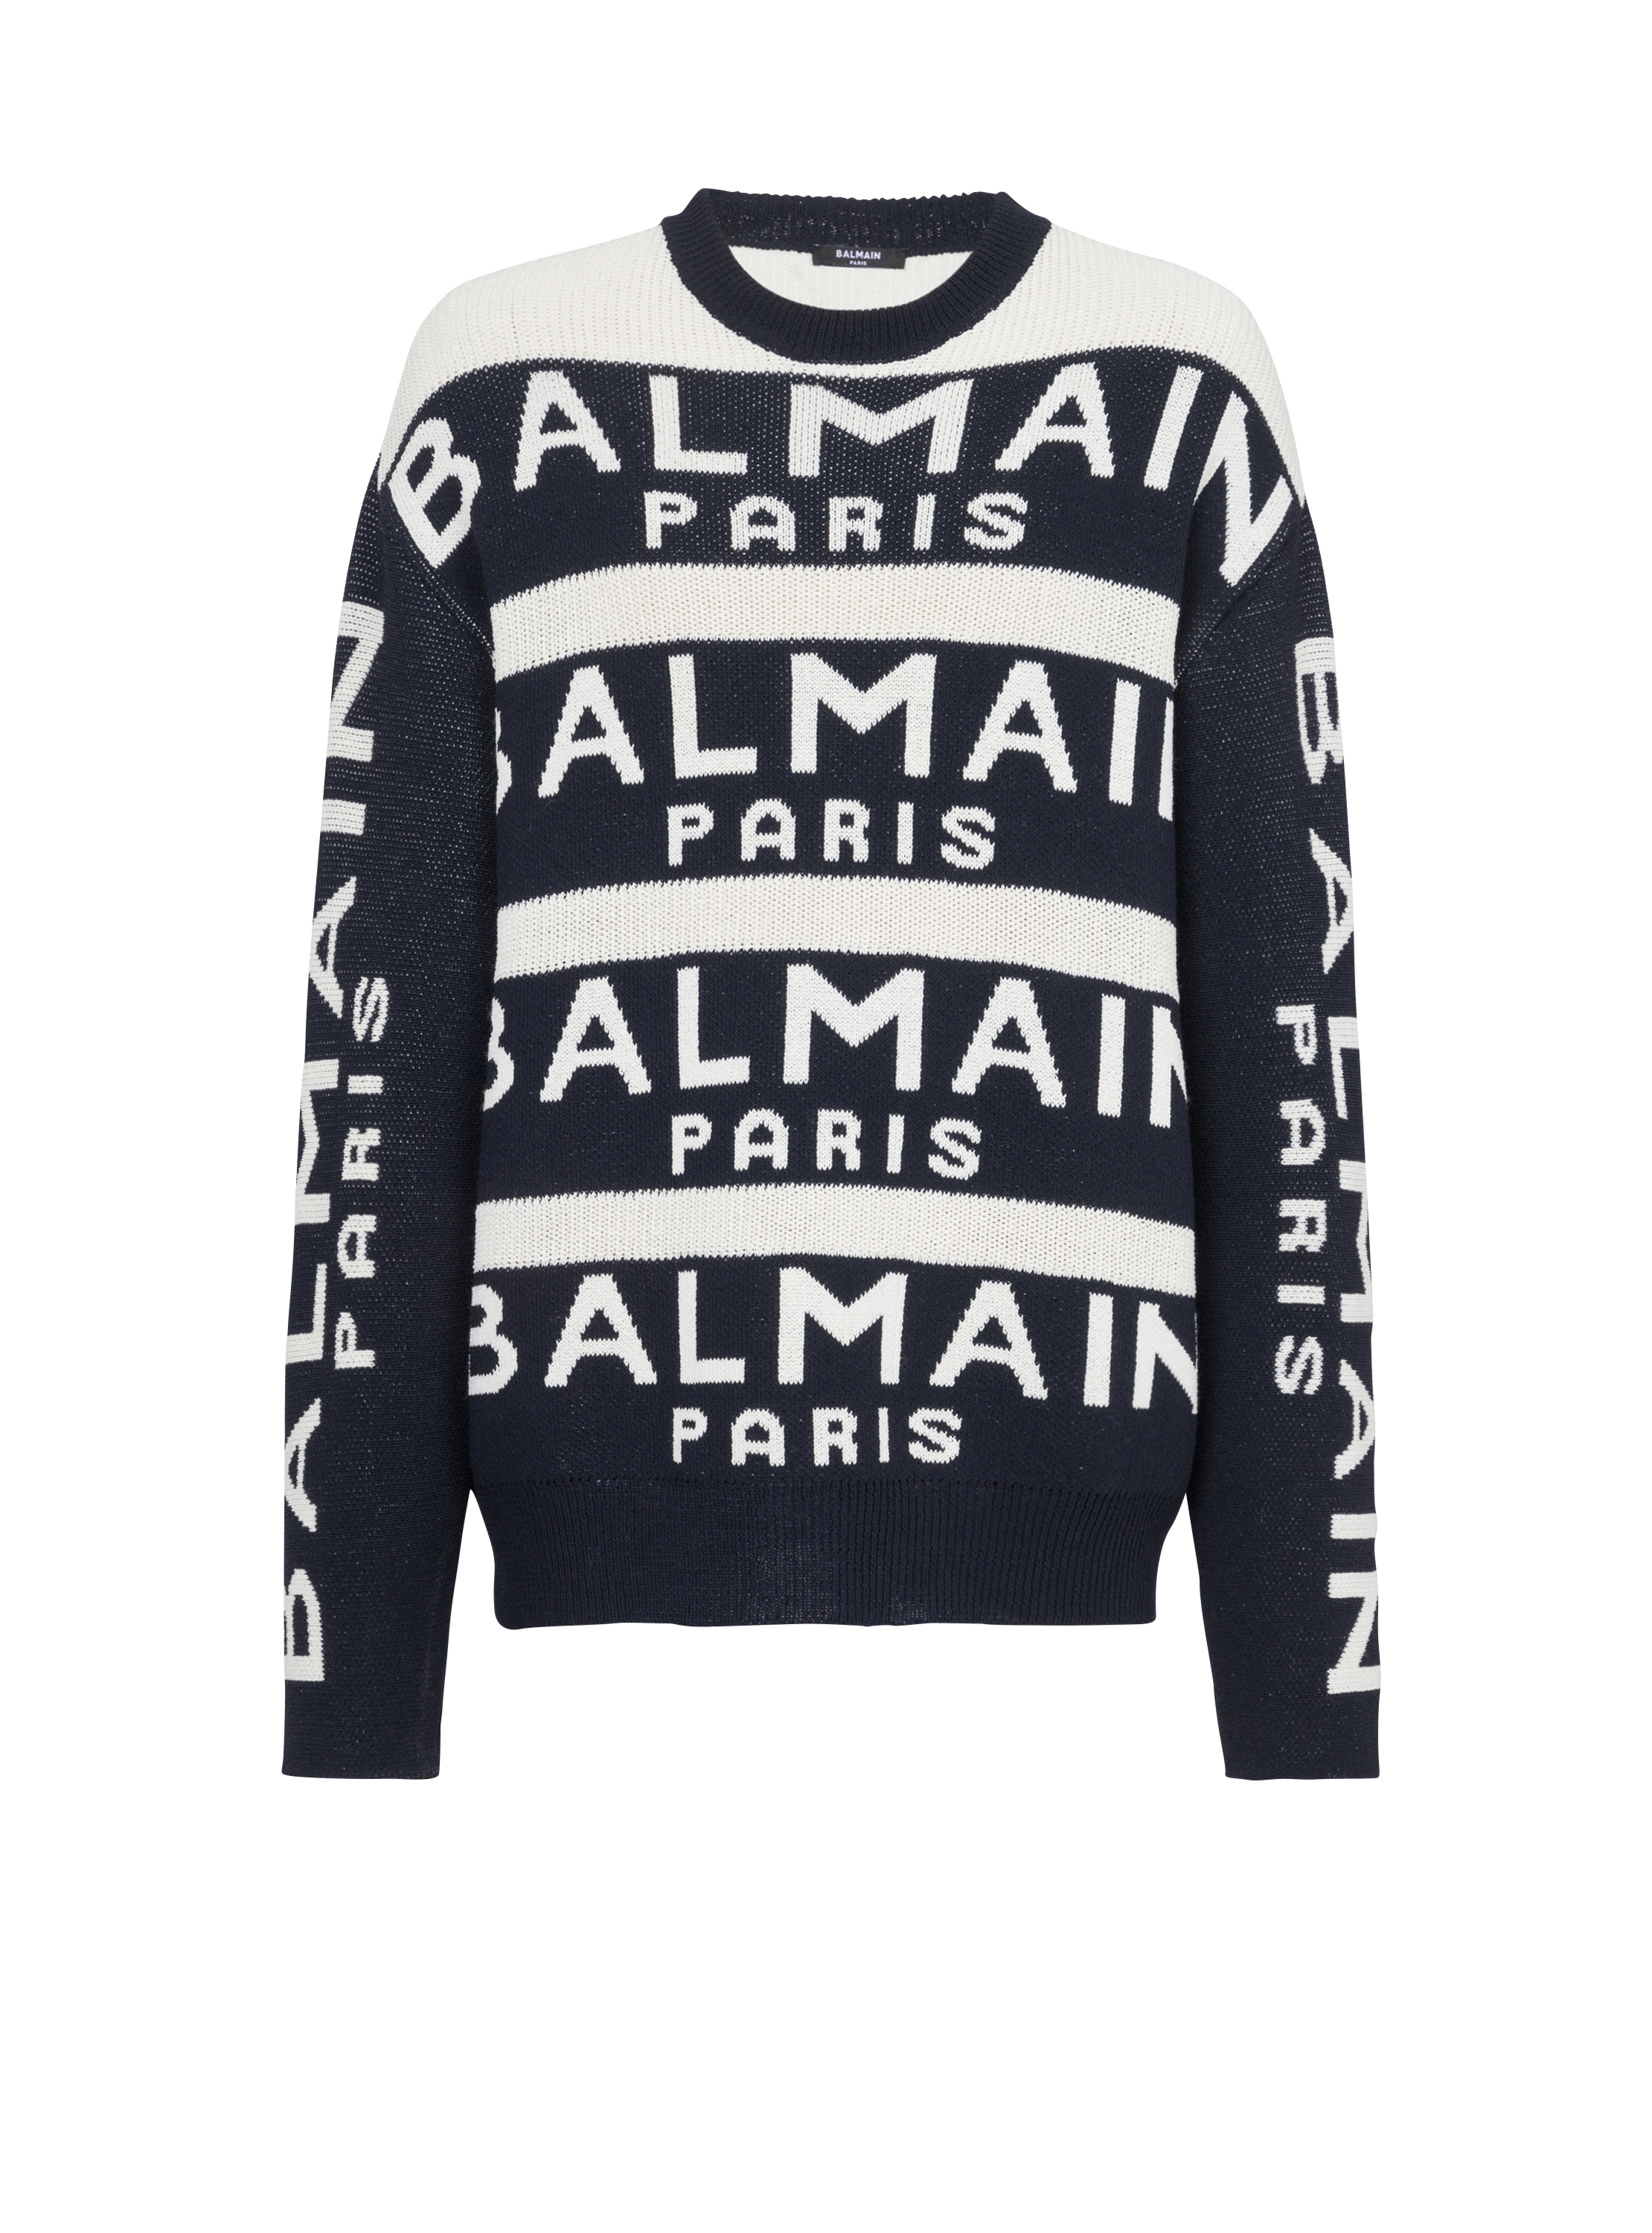 Jersey bordado con el logotipo de Balmain Paris